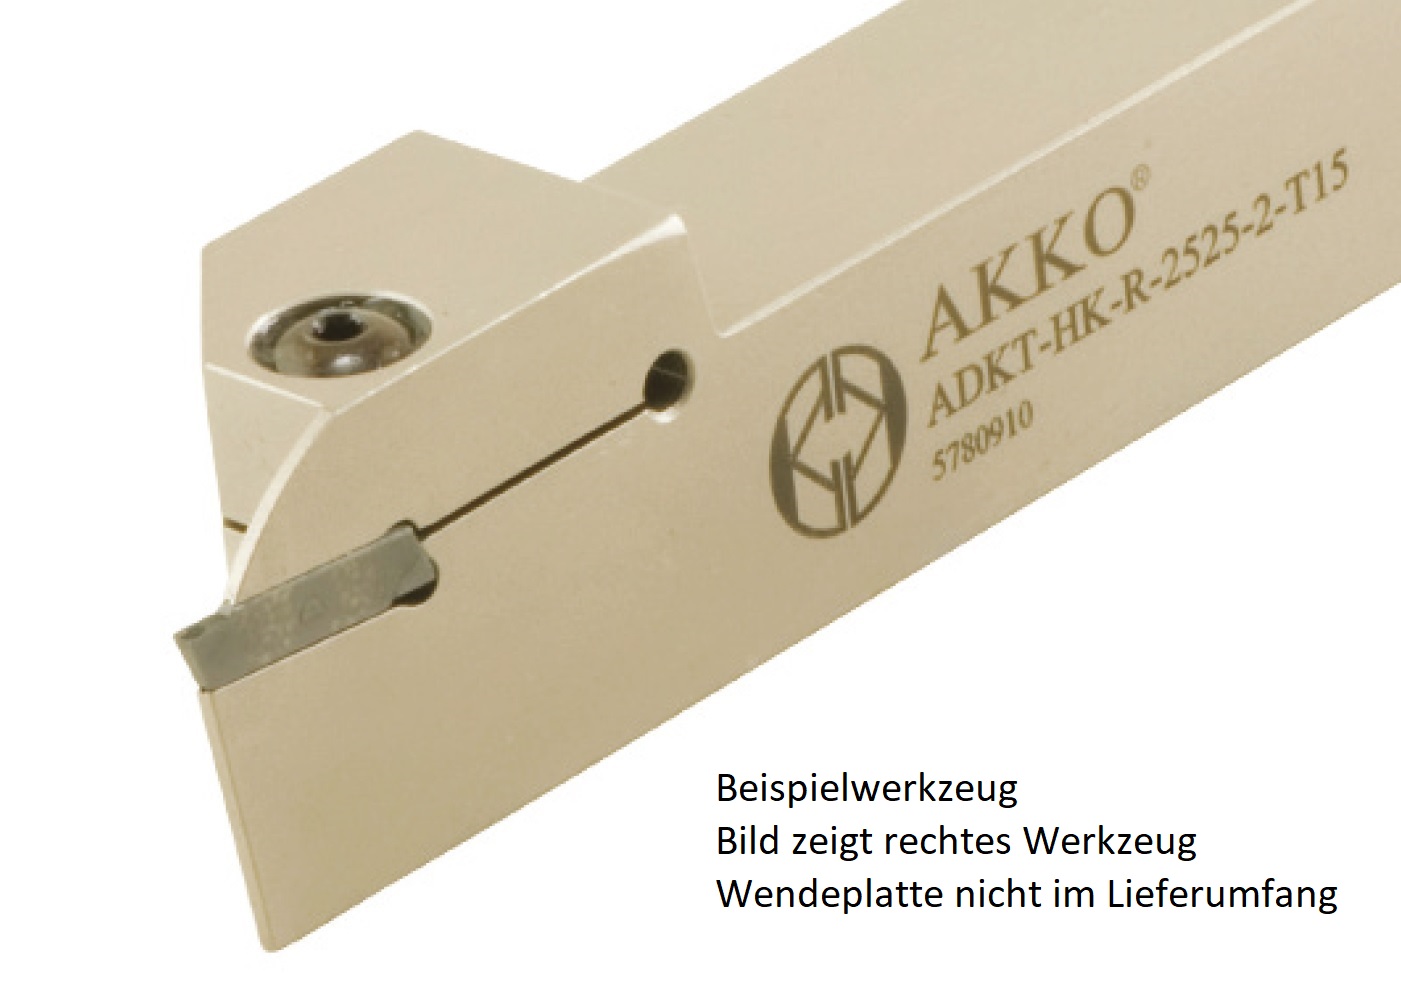 Abstechhalter ADKT-HK-R-2020-2-T15